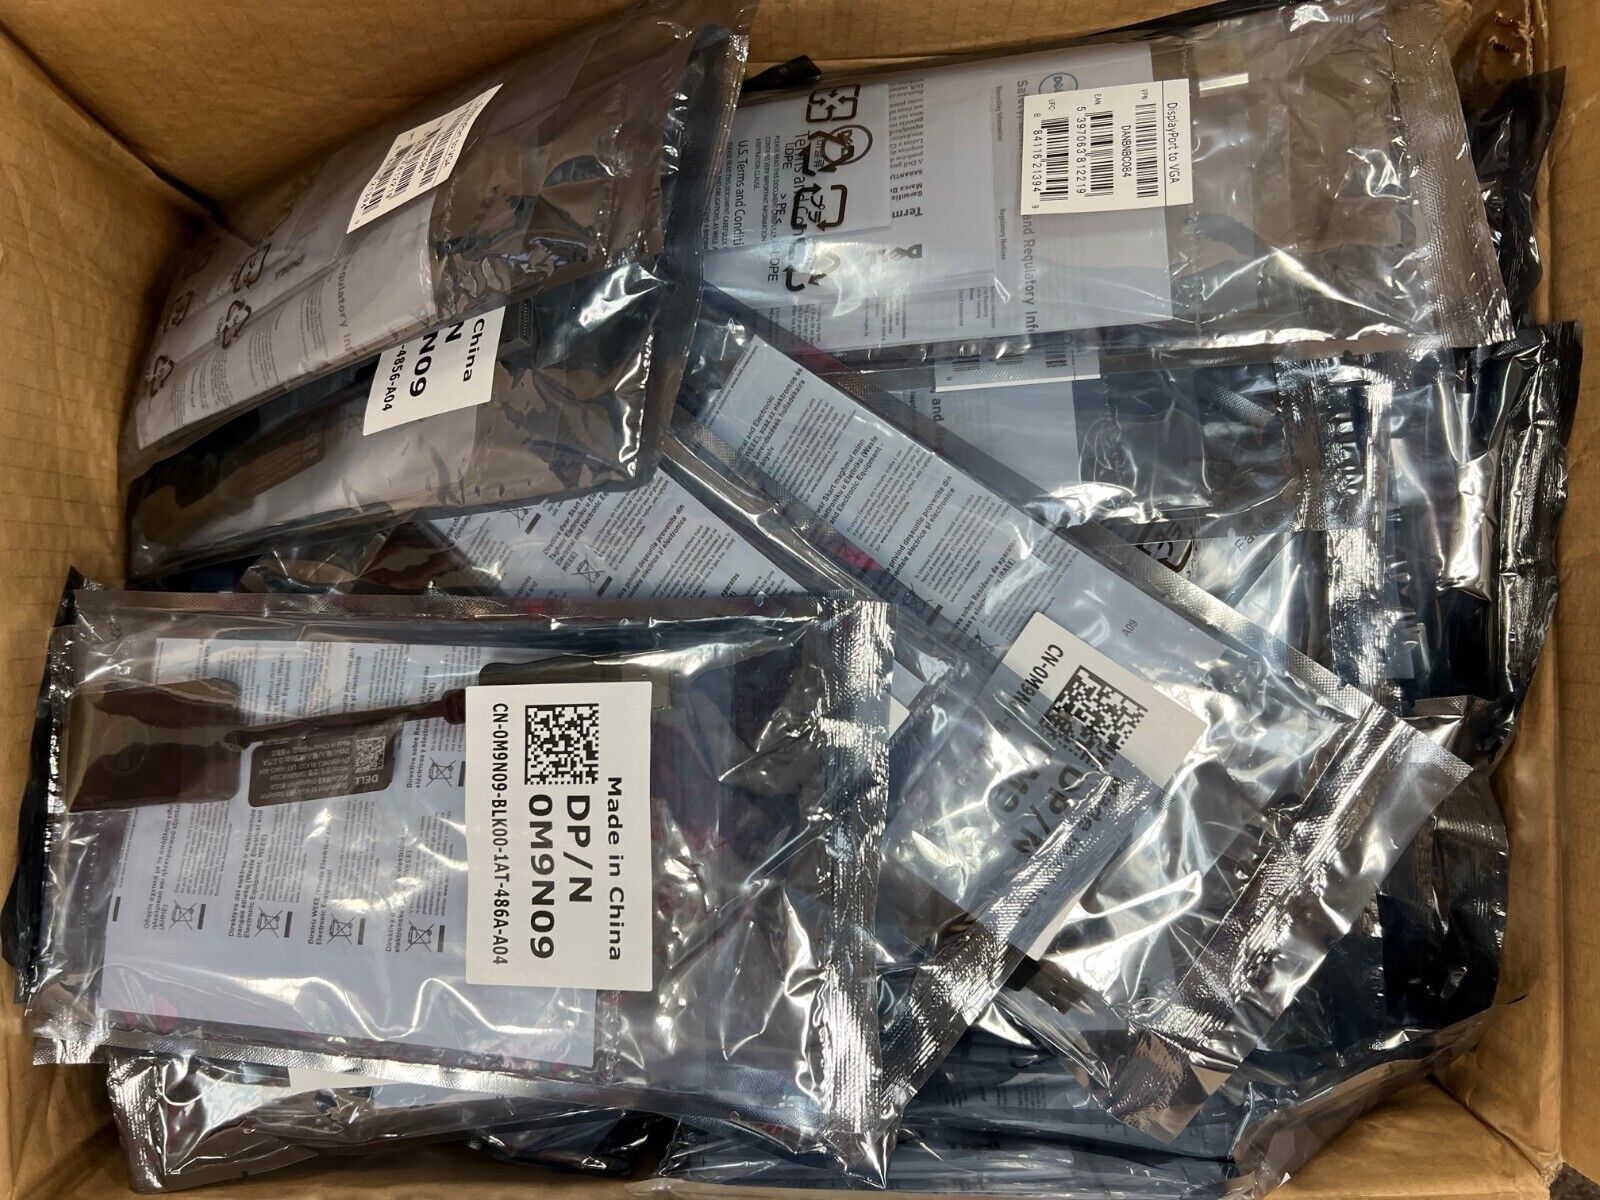 Lot of 25 NEW Genuine Dell DisplayPort to VGA Adapters (DP/N: 0M9N09 & M9N09)